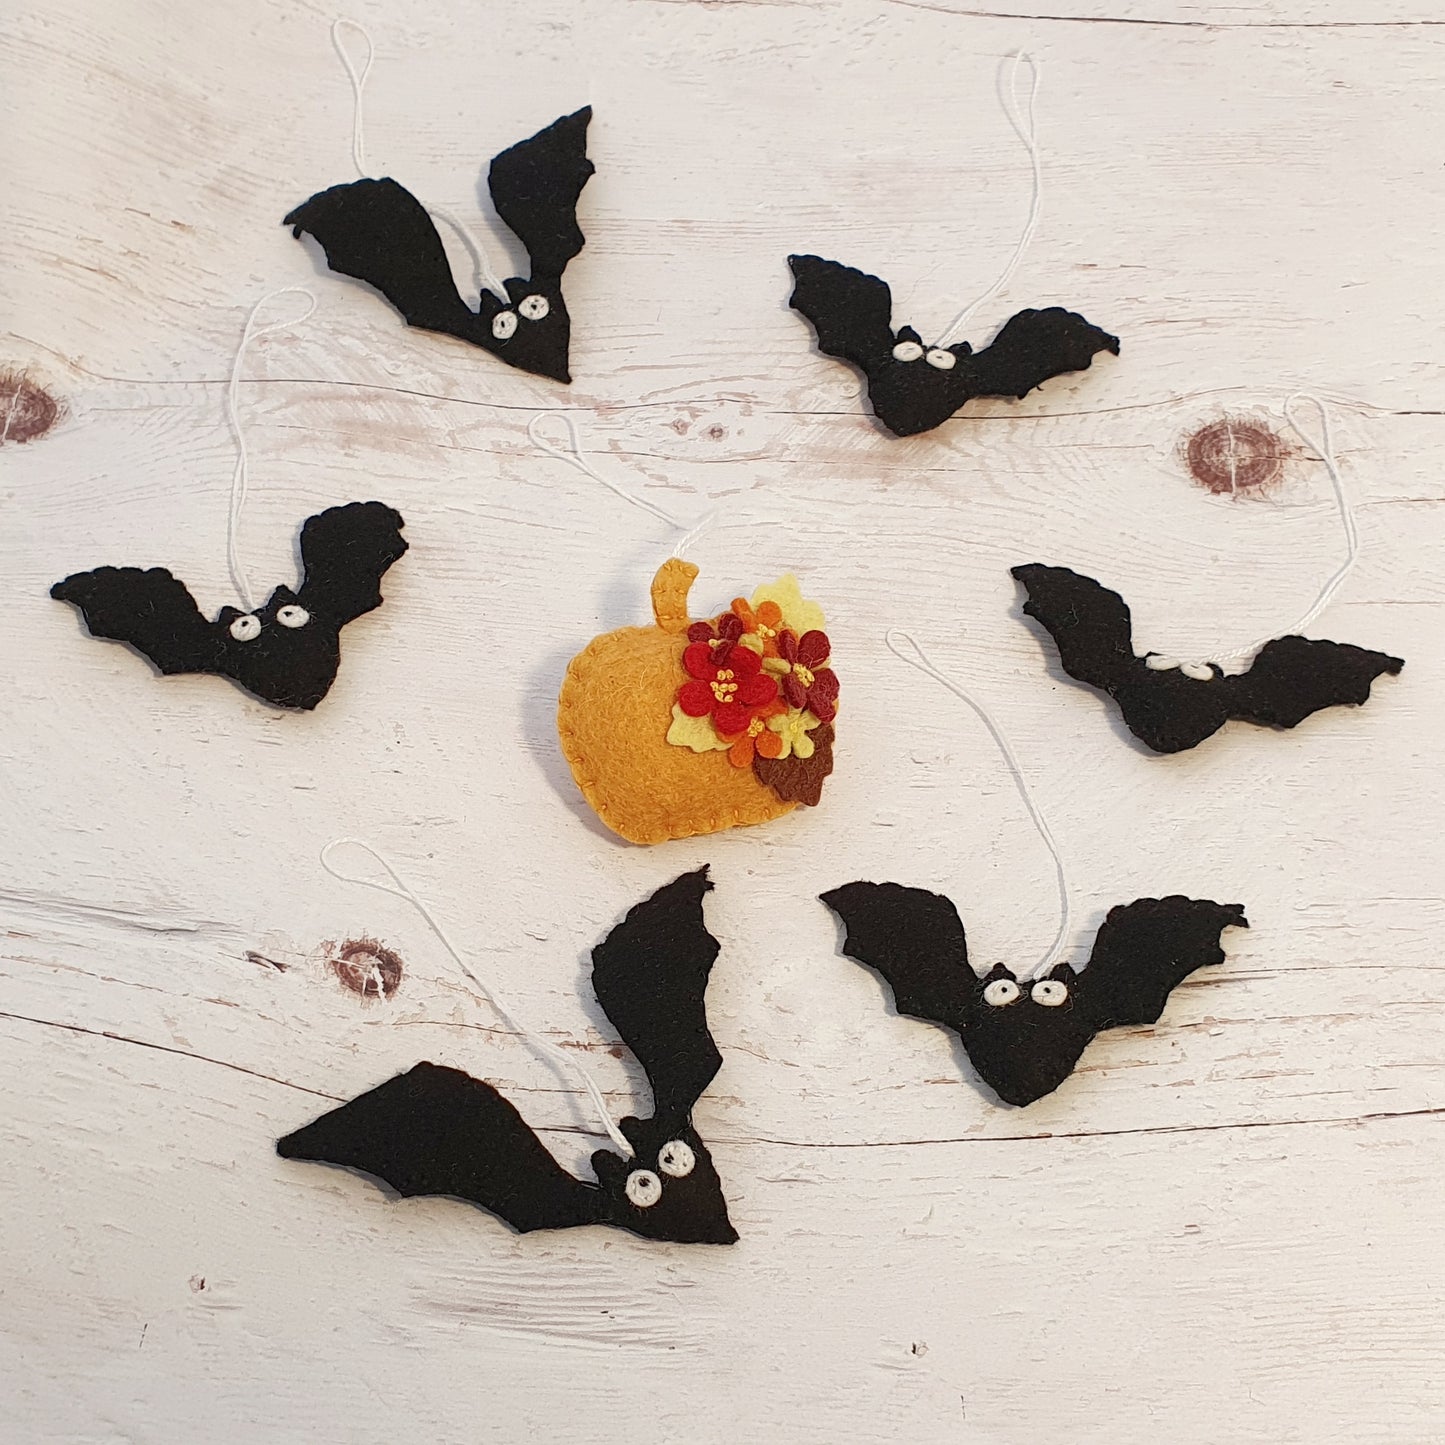 Mini BAT ornament SET OF 5 - halloween decor - handmande felt ornaments - felt bats